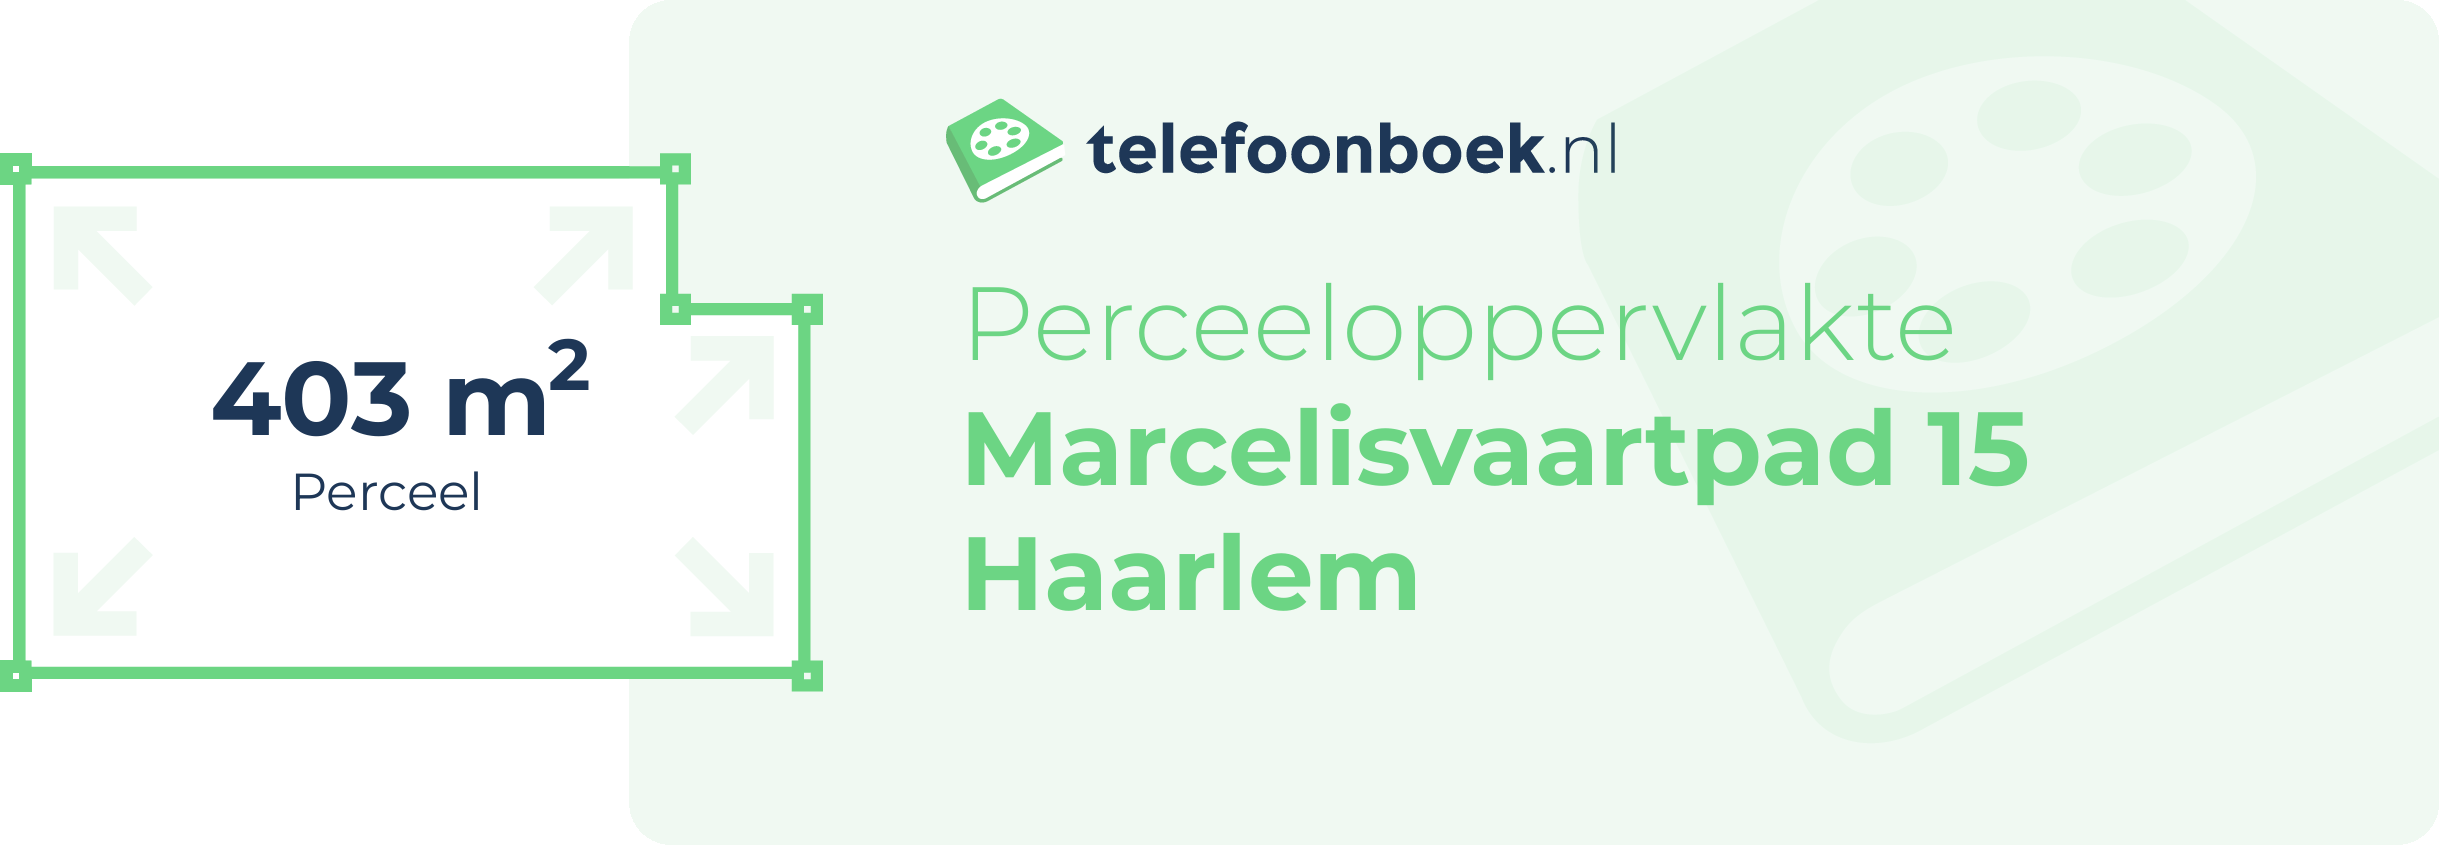 Perceeloppervlakte Marcelisvaartpad 15 Haarlem